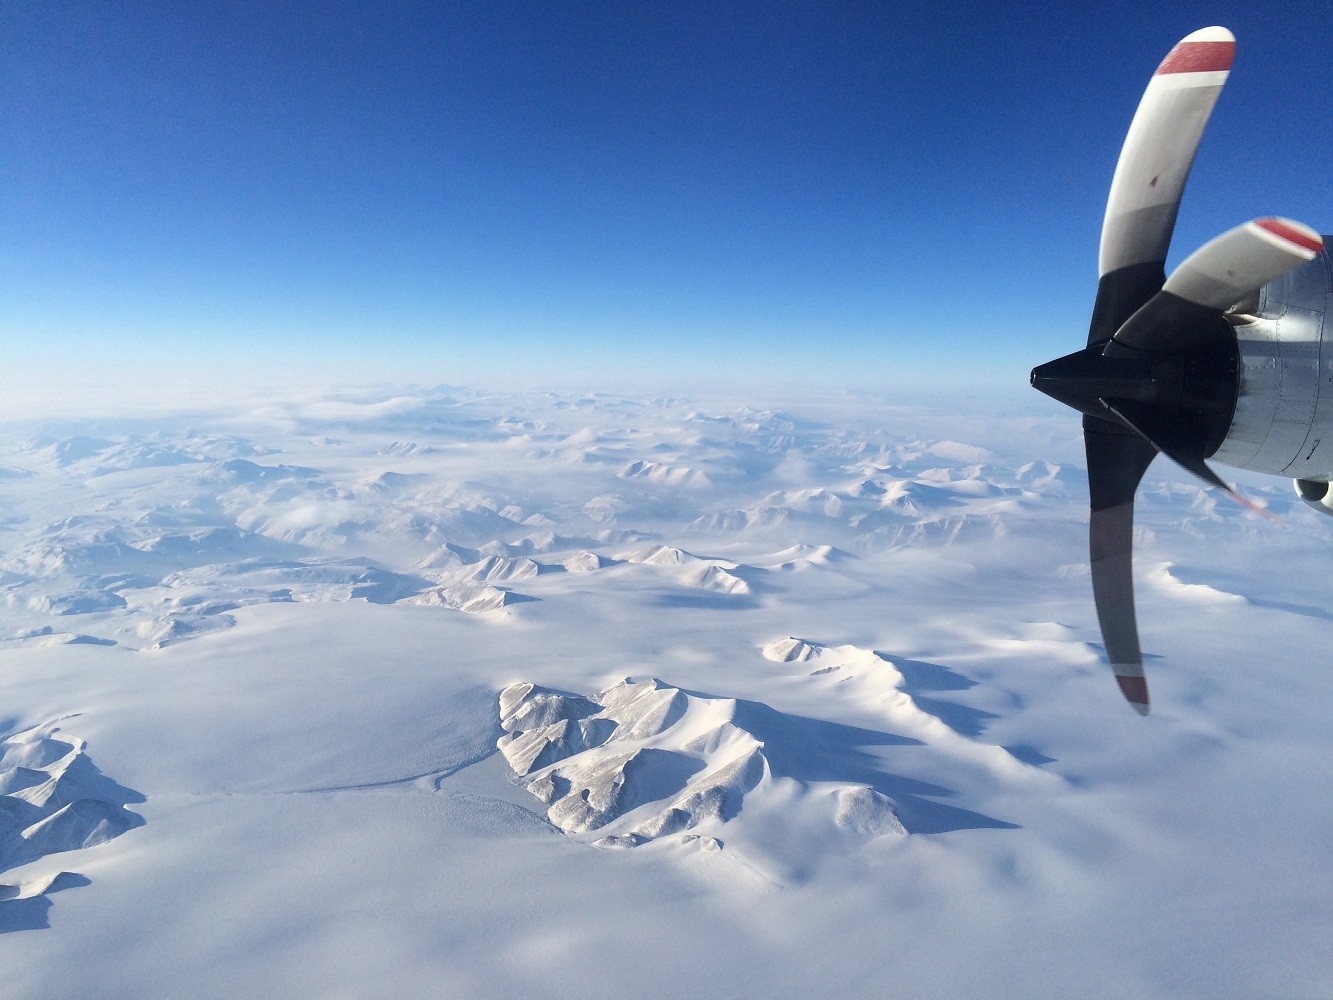 Greenland snowy mountains from NASA's P3. Photo: Caitlin Locke (LDEO)